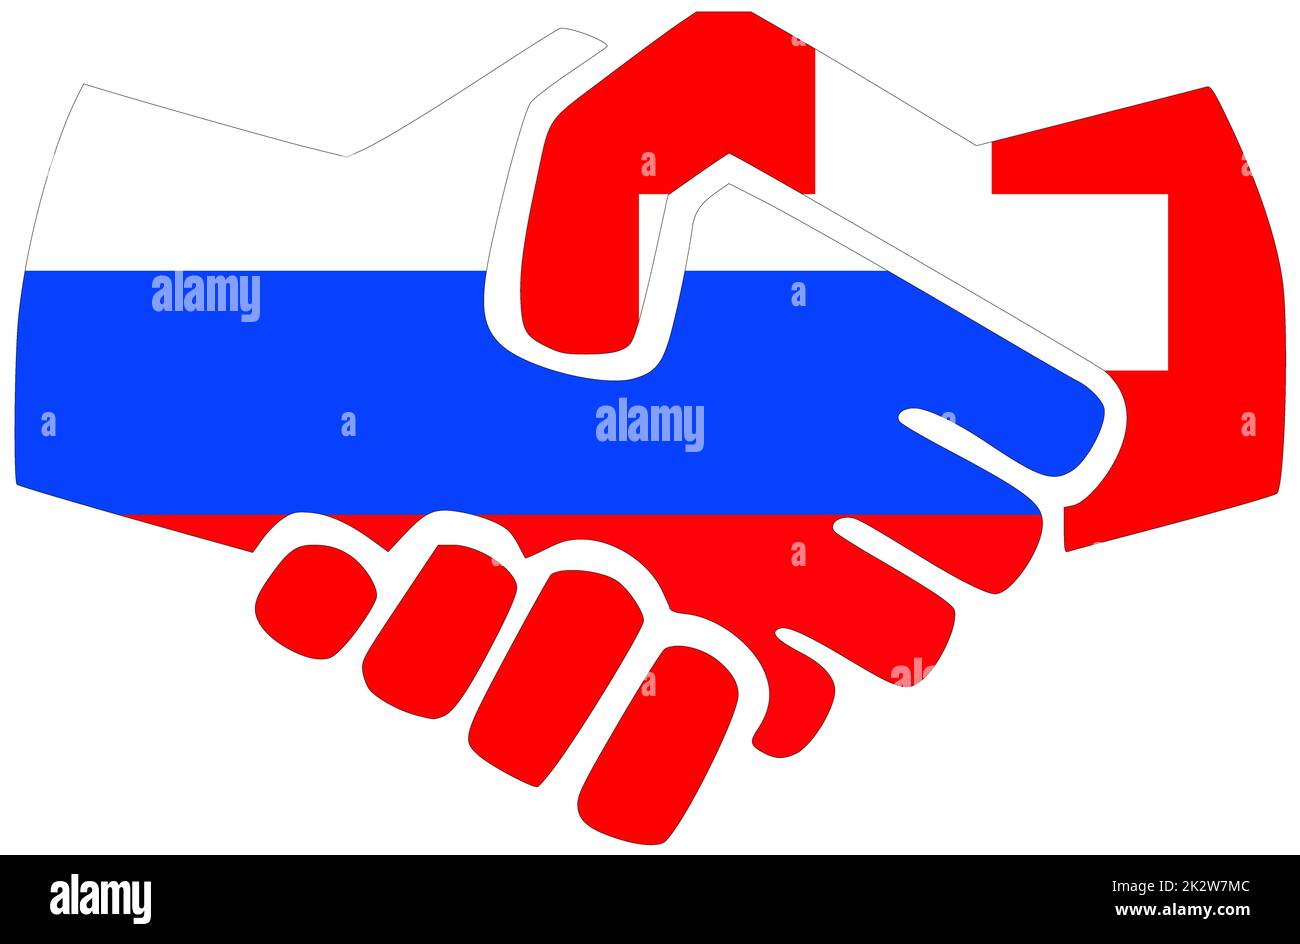 Russia - Switzerland : Handshake, symbol of agreement or friendship Stock Photo